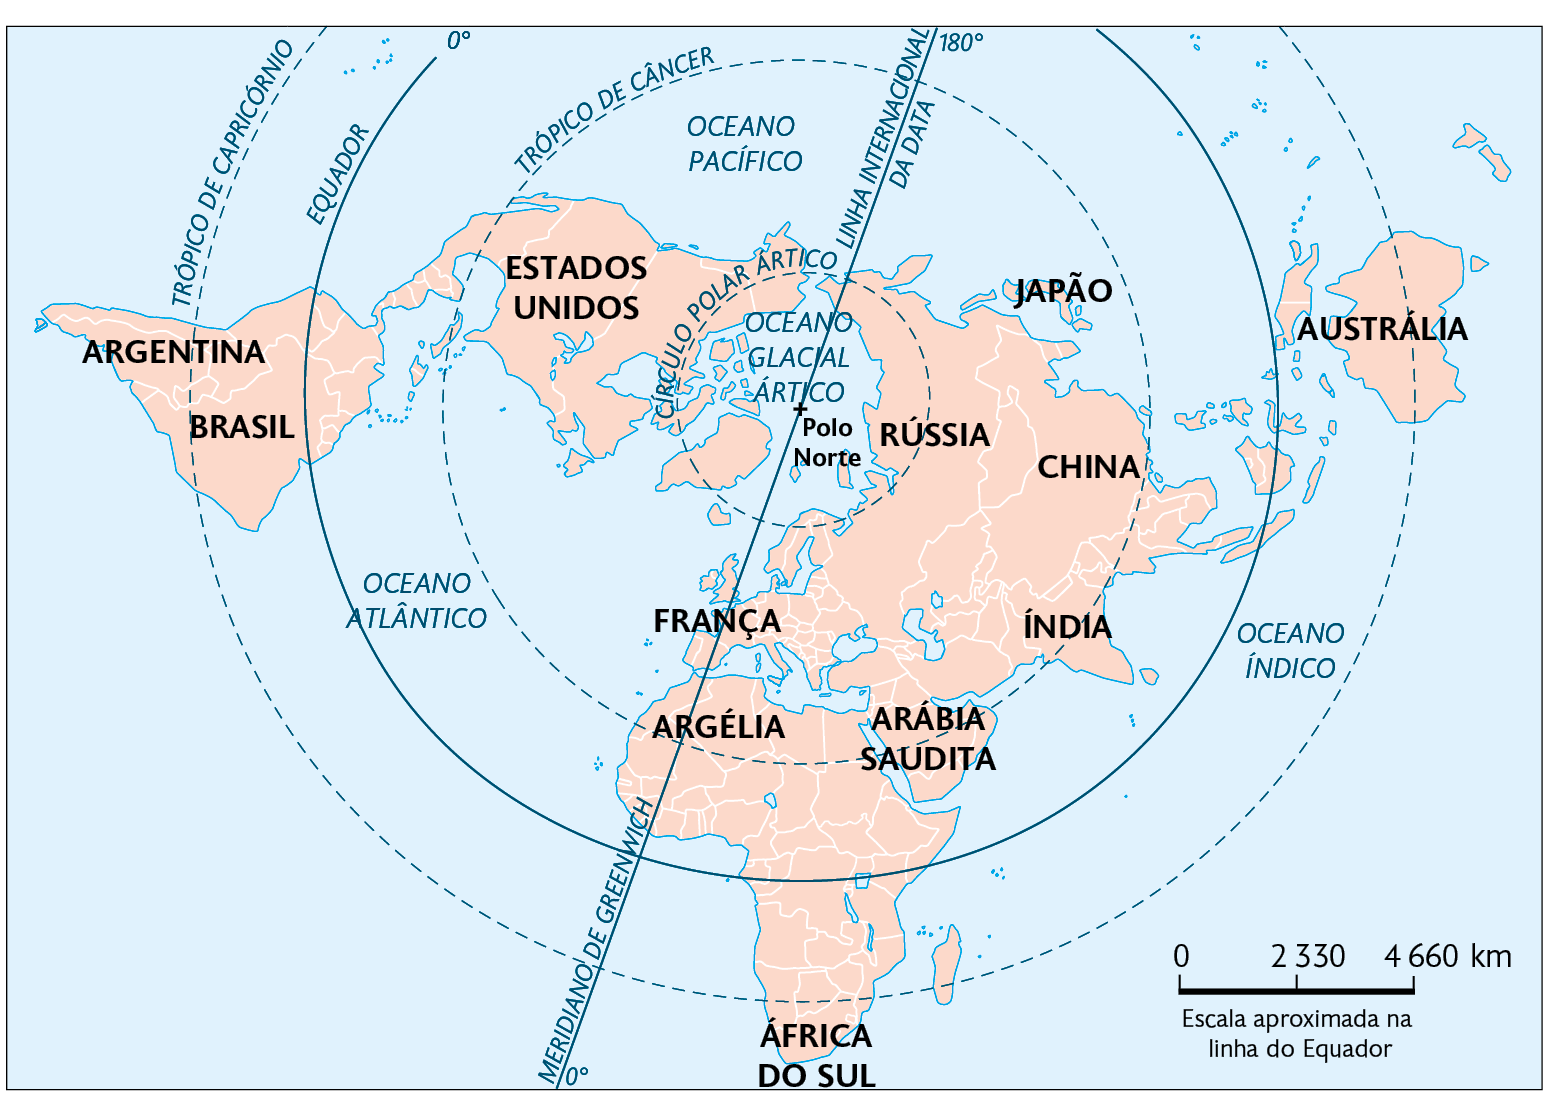 Mapa. Projeção plana de Fuller. Mostrando os continentes visto do topo, com Polo Norte no centro, Estados Unidos, Rússia, Japão e França disposto ao redor dele; Argentina e Brasil à esquerda; Argélia, África do Sul e Arábia Saudita ao sul; China, Índia e Austrália à direita. No canto inferior direito, a escala: 2330 quilômetros por centímetro.